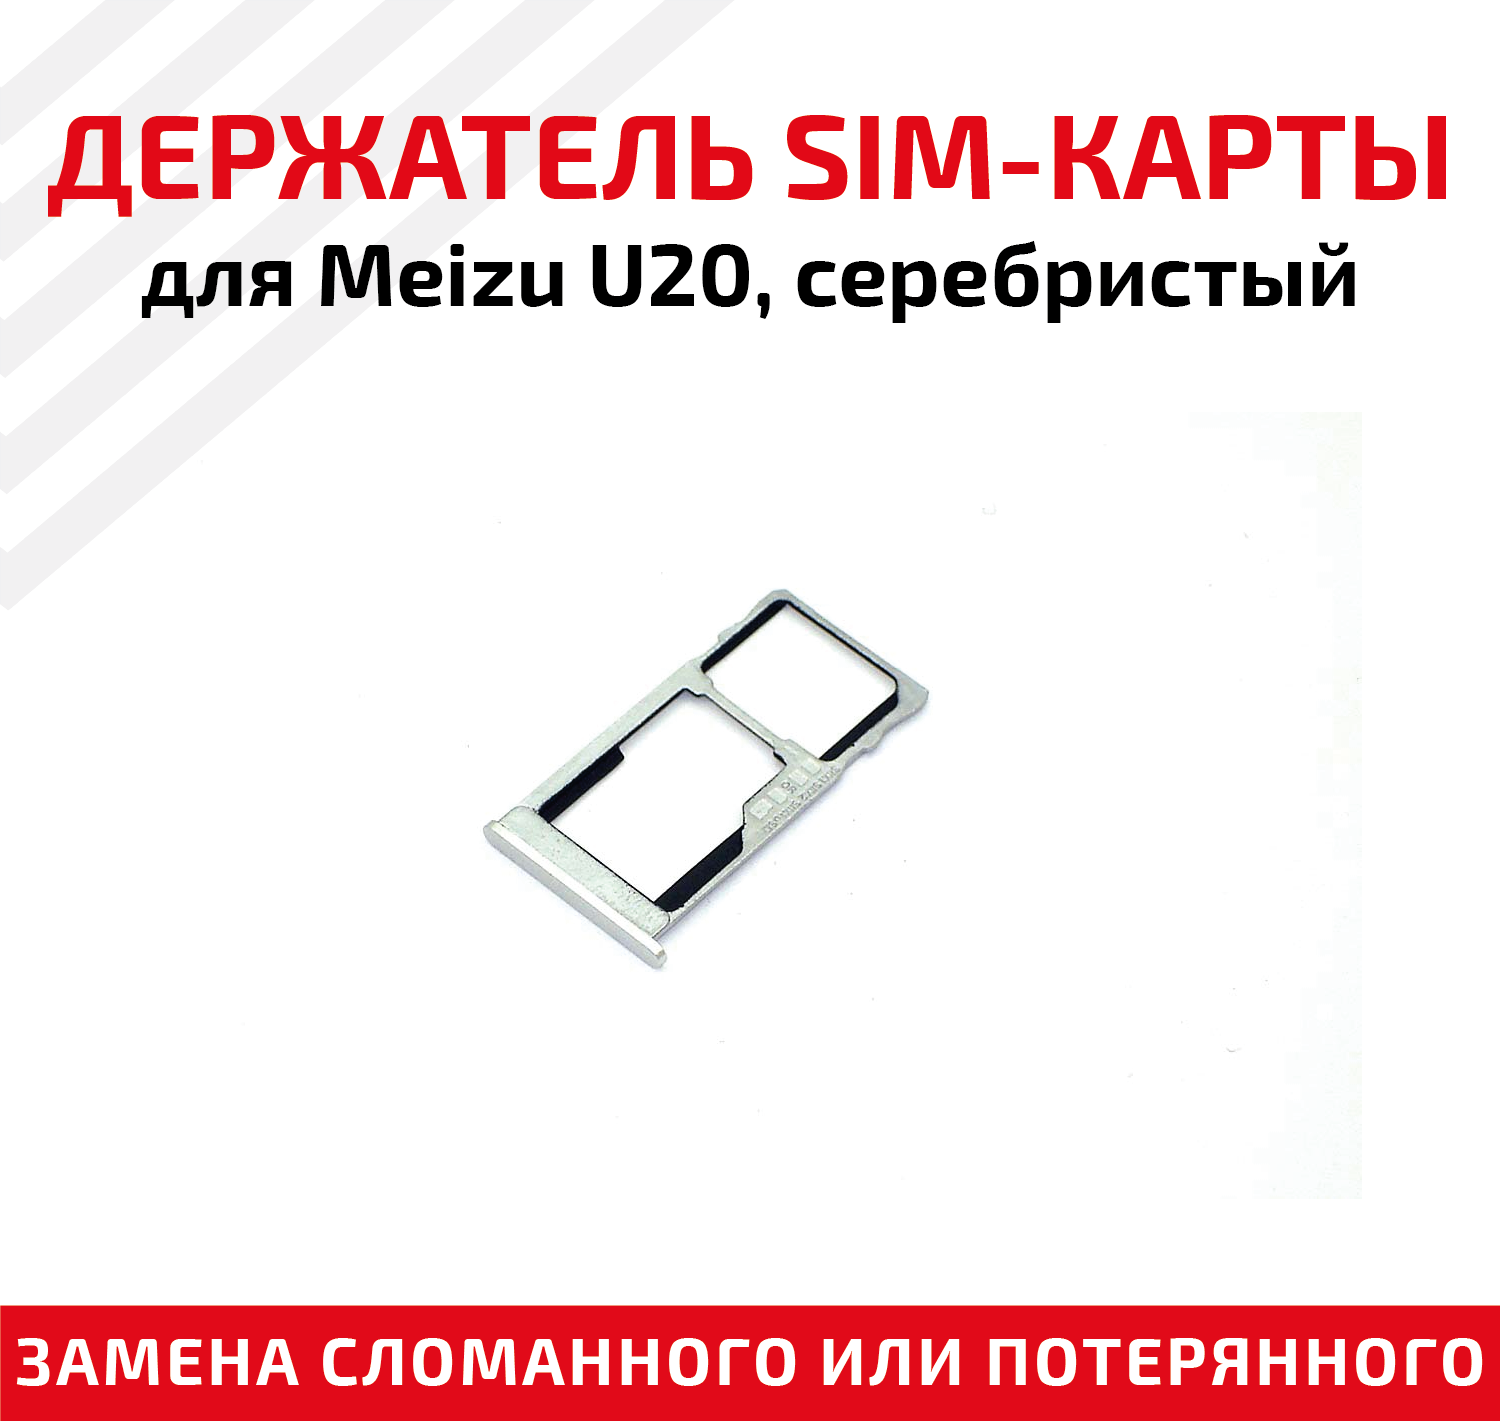 Лоток (держатель, контейнер, слот) SIM-карты для мобильного телефона (смартфона) Meizu U20, серебристый